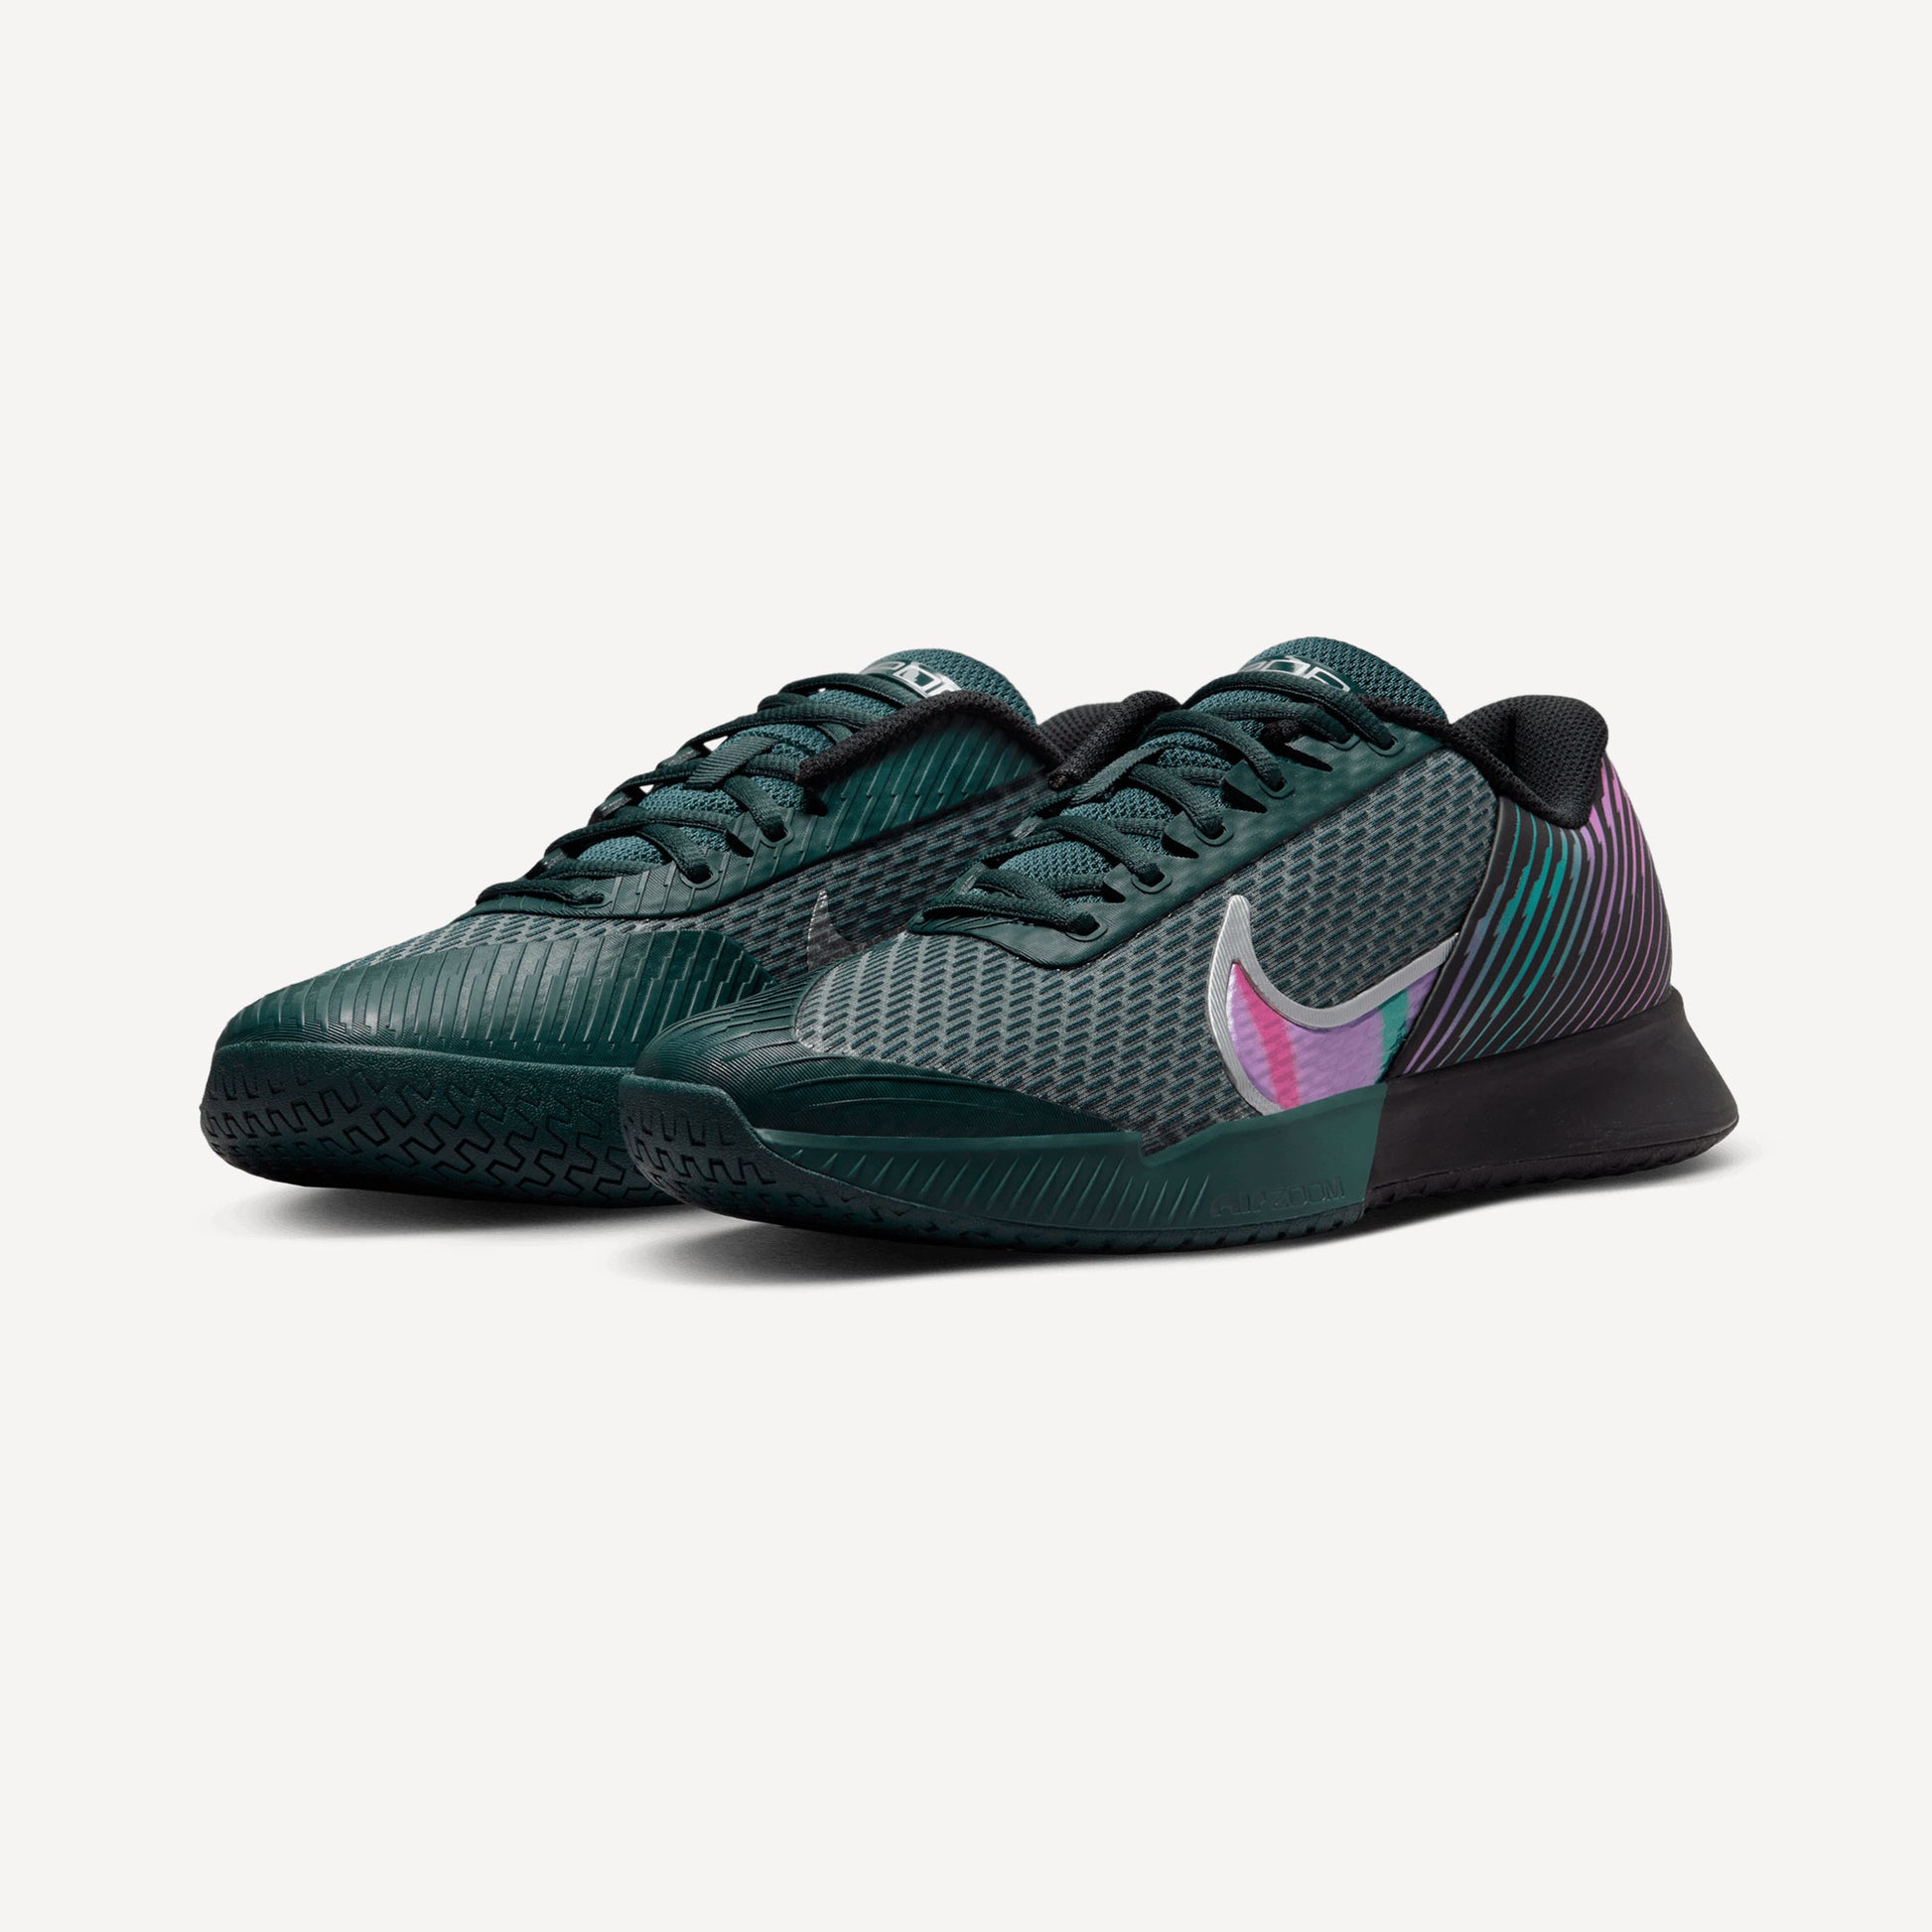 NikeCourt Air Zoom Vapor Pro 2 Premium Men's Hard Court Tennis Shoes Black (4)